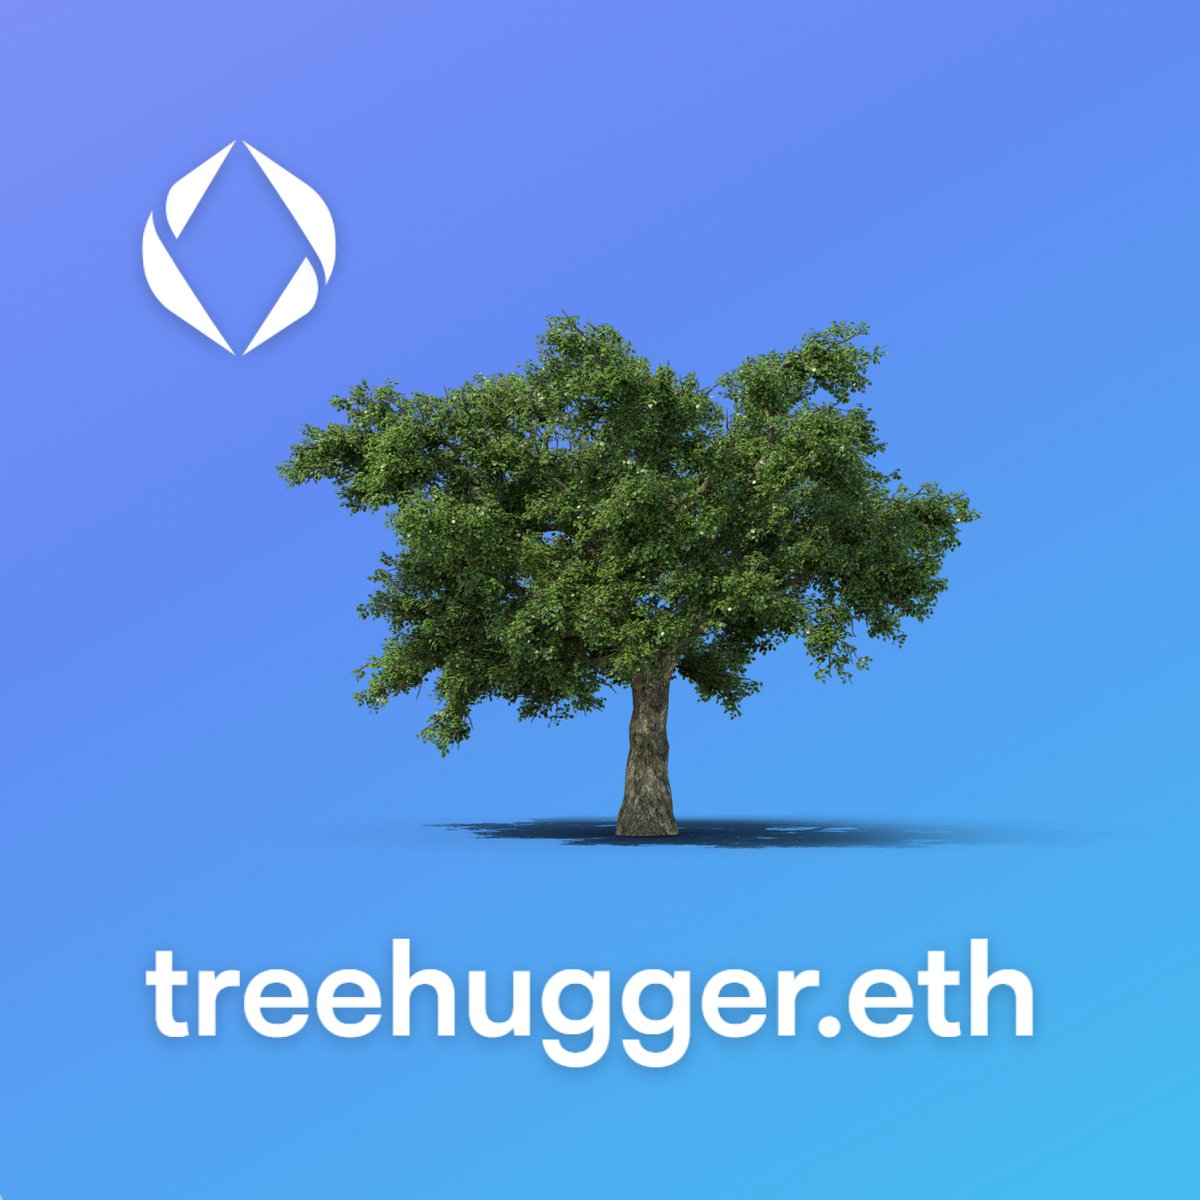 #treehugger #ens 

vision.io/name/treehugger